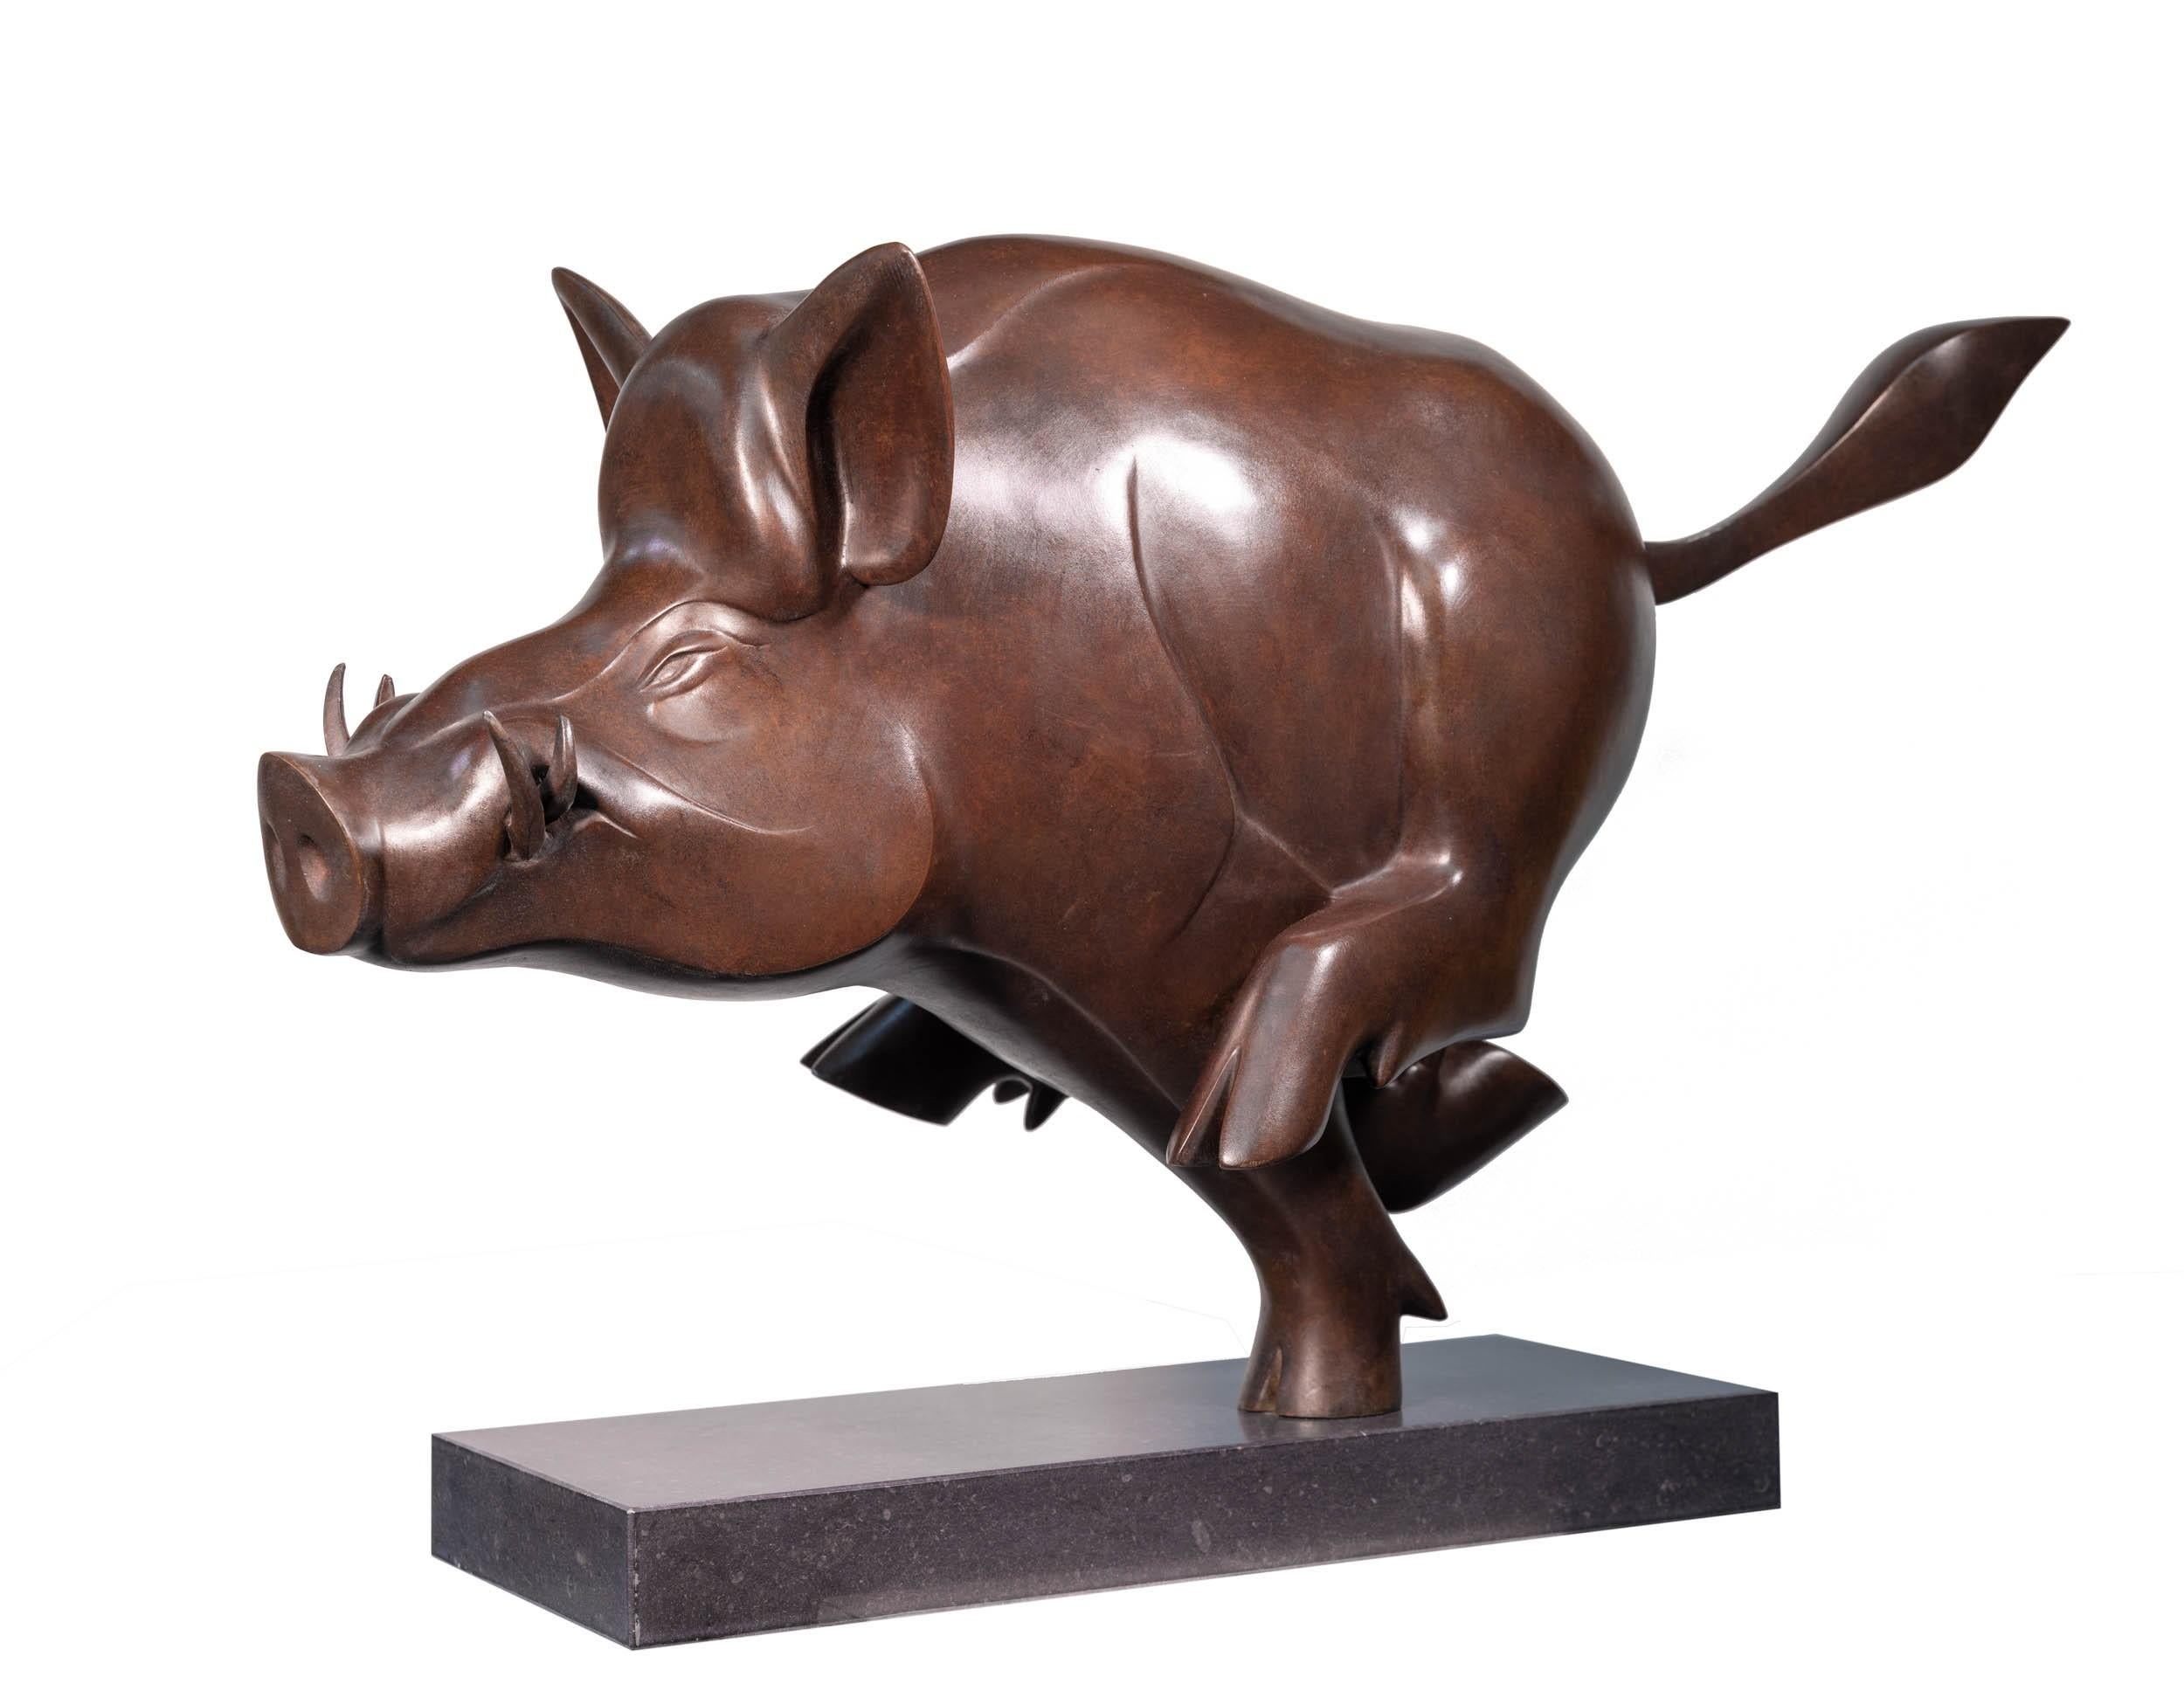 Figurative Sculpture Evert den Hartog - Everzwijn n° 2 Wild Boar - Sculpture en bronze - Animaux animaliers bruns - En stock 